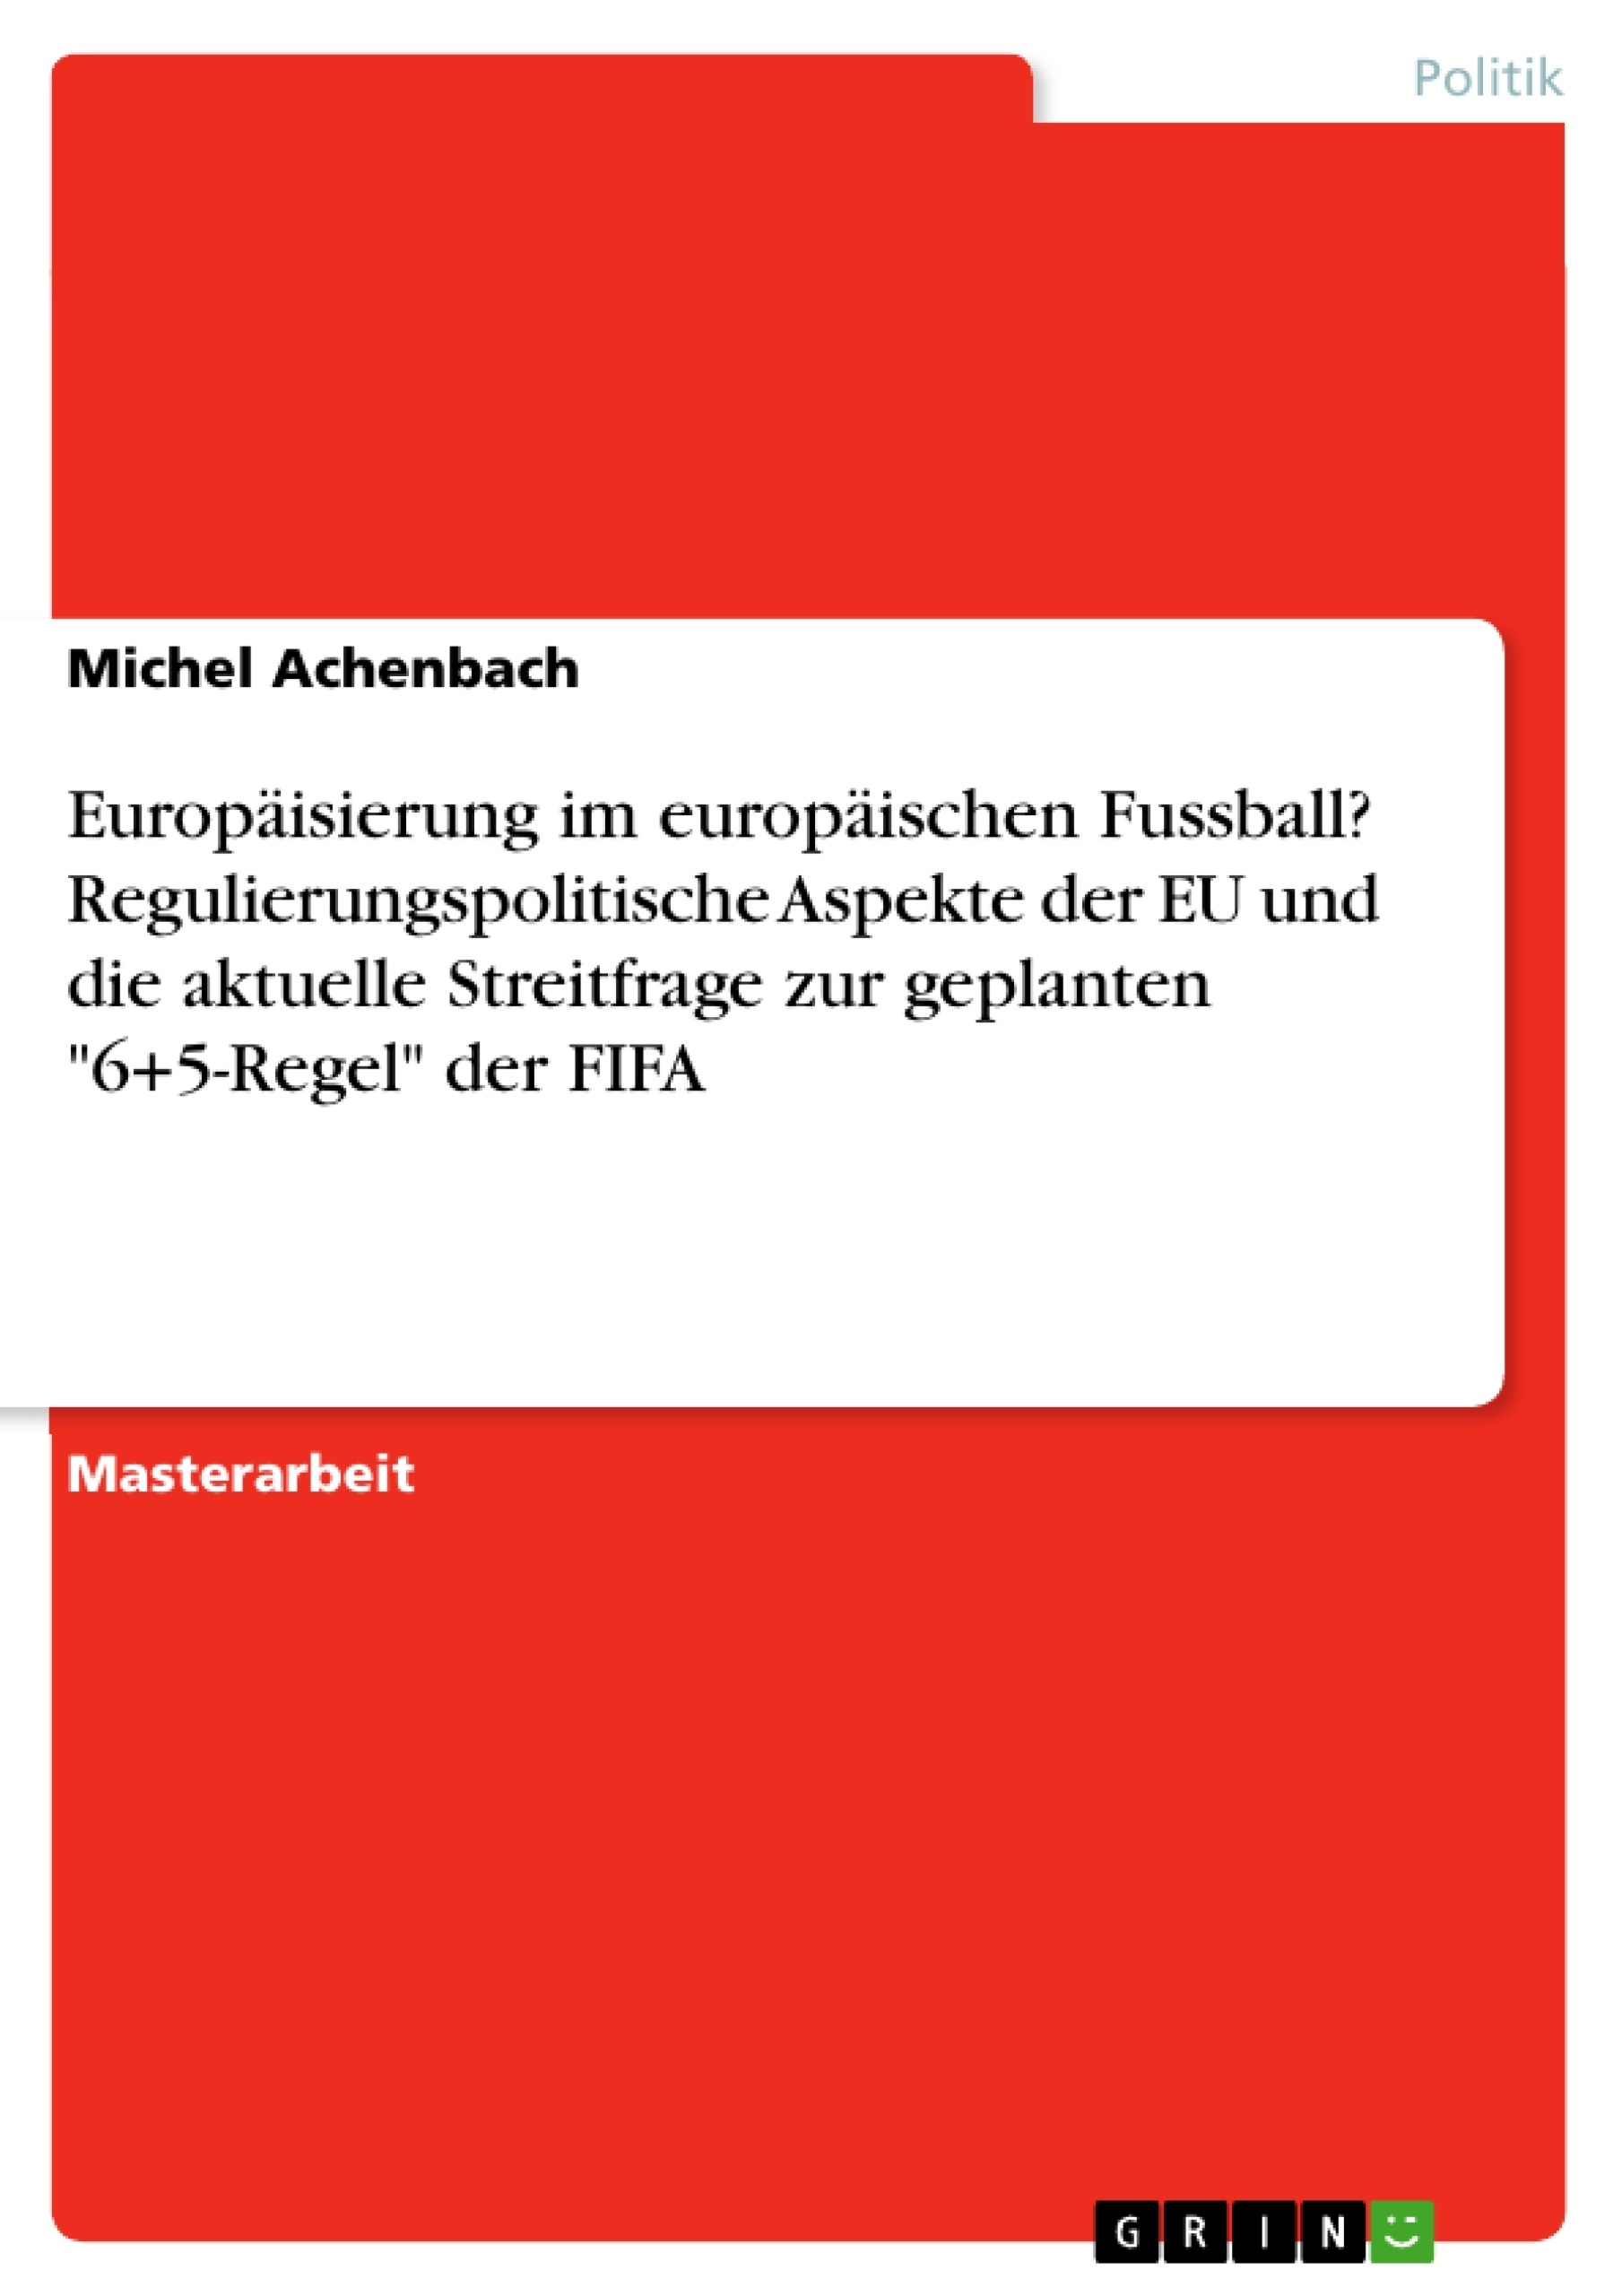 Título: Europäisierung im europäischen Fussball? Regulierungspolitische Aspekte der EU und die aktuelle Streitfrage zur geplanten "6+5-Regel" der FIFA